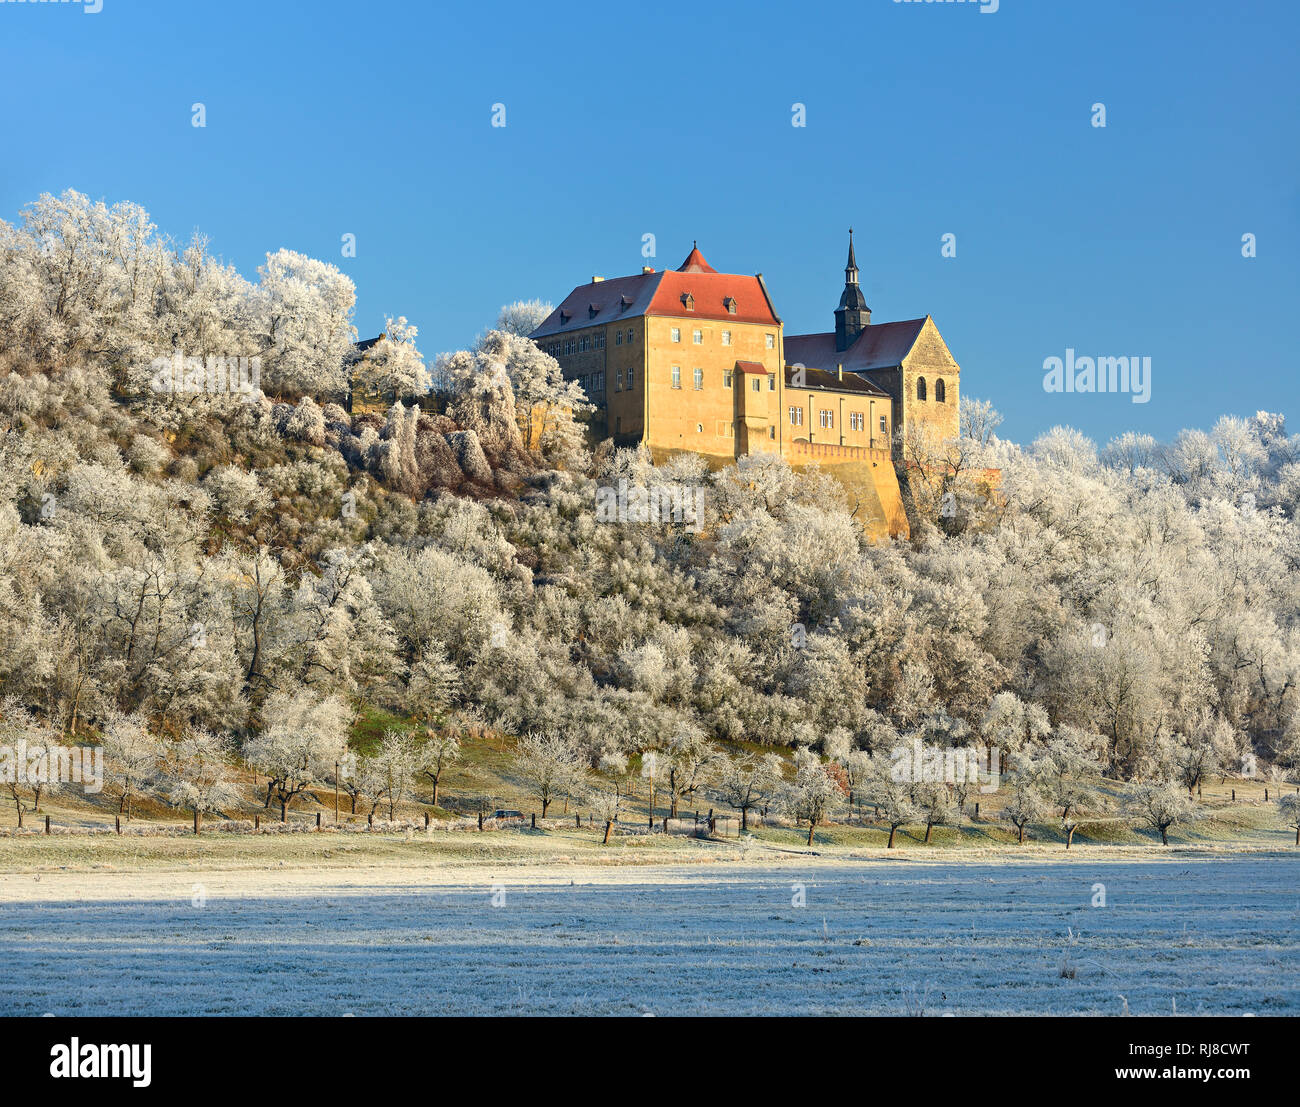 Deutschland, Sachsen-Anhalt, Burgenlandkreis, Goseck, Saaletal Goseck, Schloss im Winter, Bäume mit Raureif bedeckt Banque D'Images